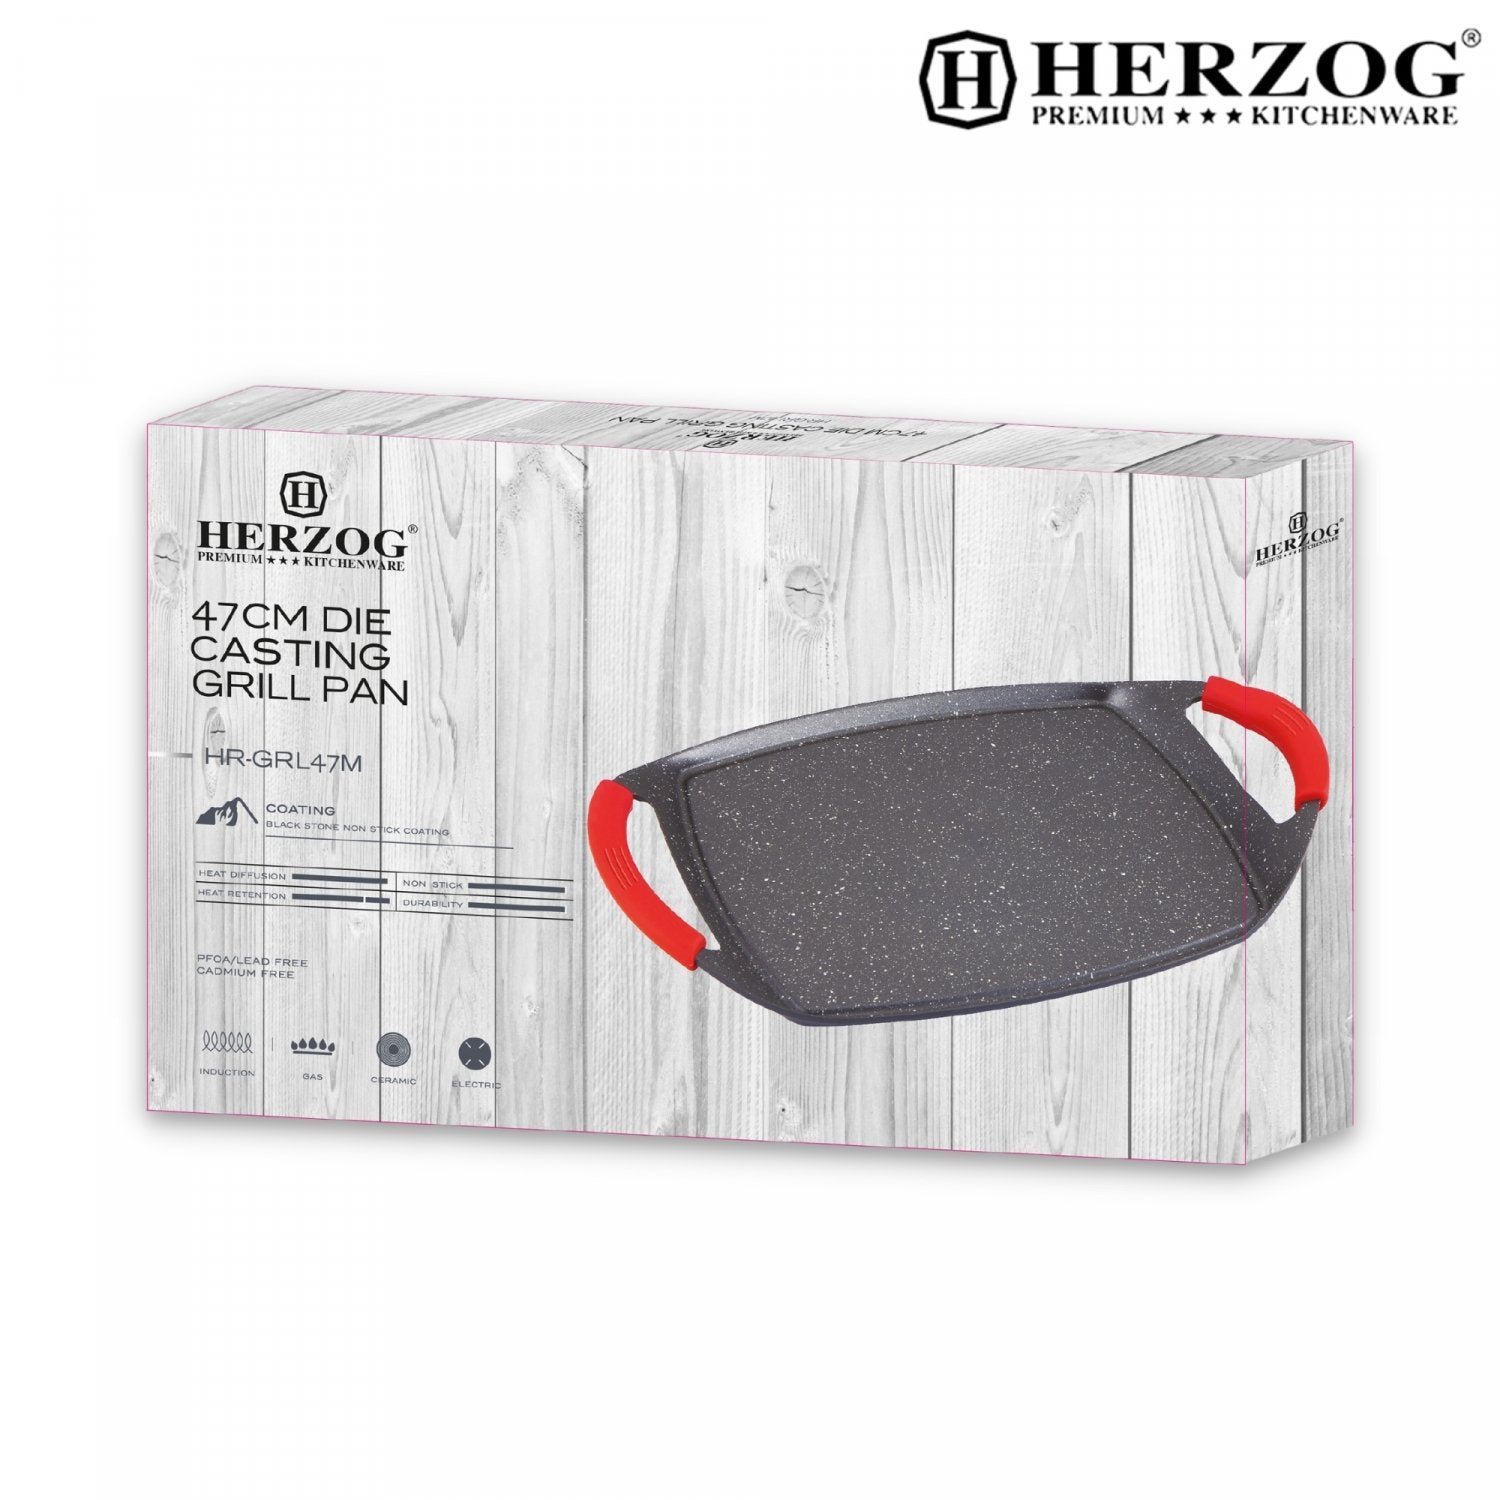 Steenbakplaat met Anti-aanbaklaag - Herzog - 47cm - Bivakshop